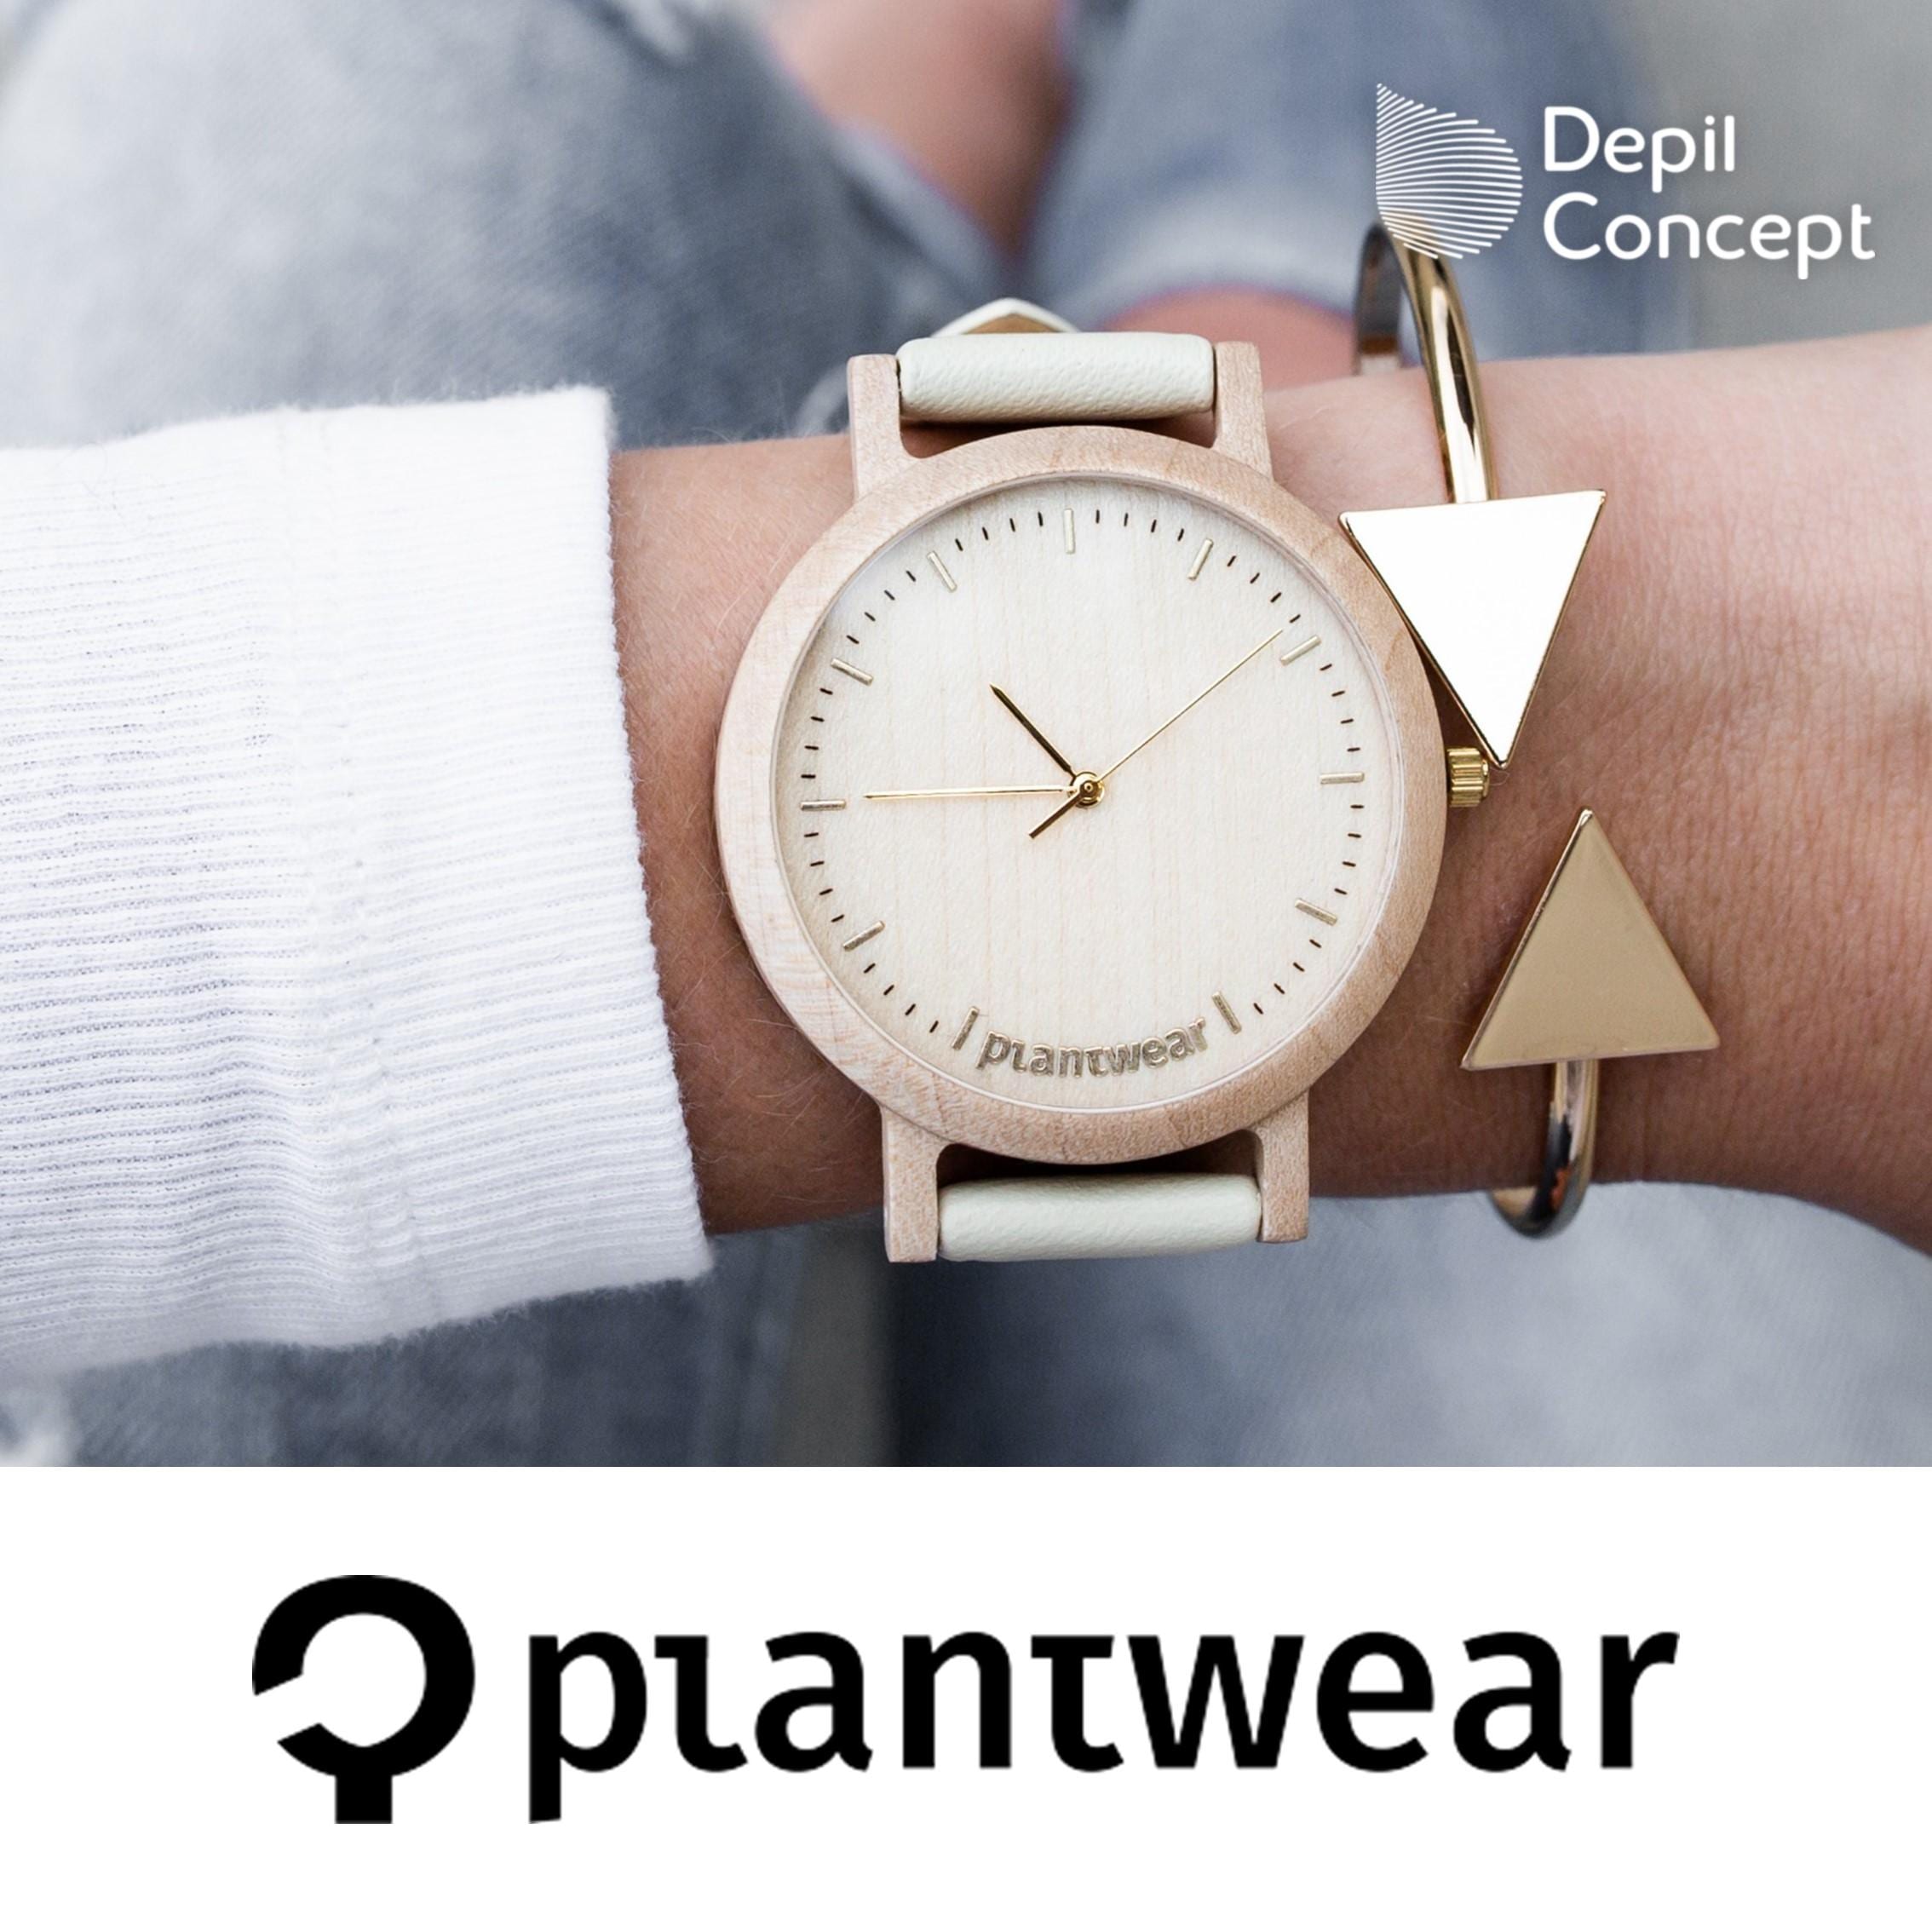 PlantWear – drewniane zegarki i akcesoria